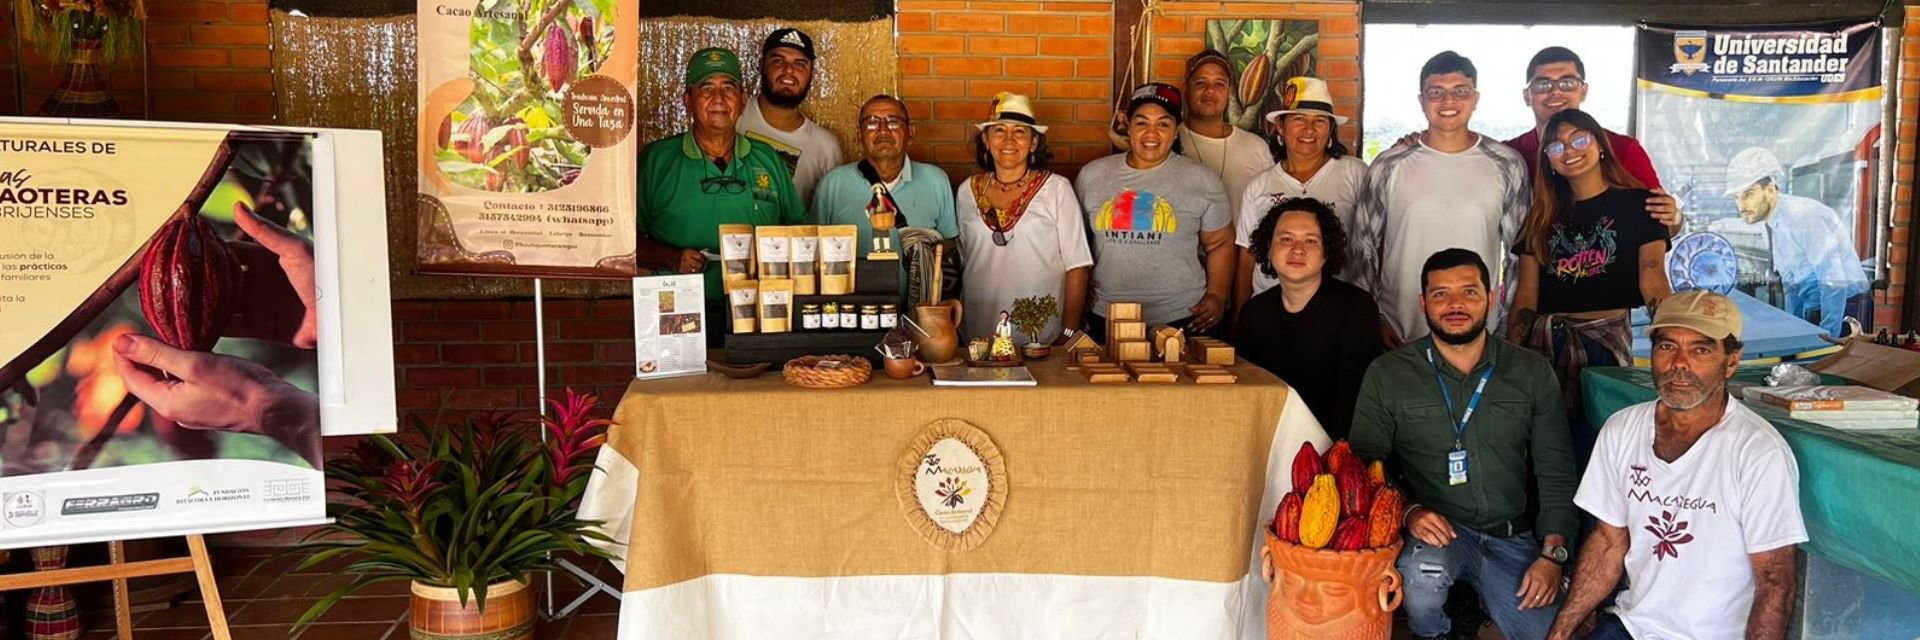 Exposición fotográfica en Bucaramanga revive la memoria colectiva de las familias cacaoteras de Santander